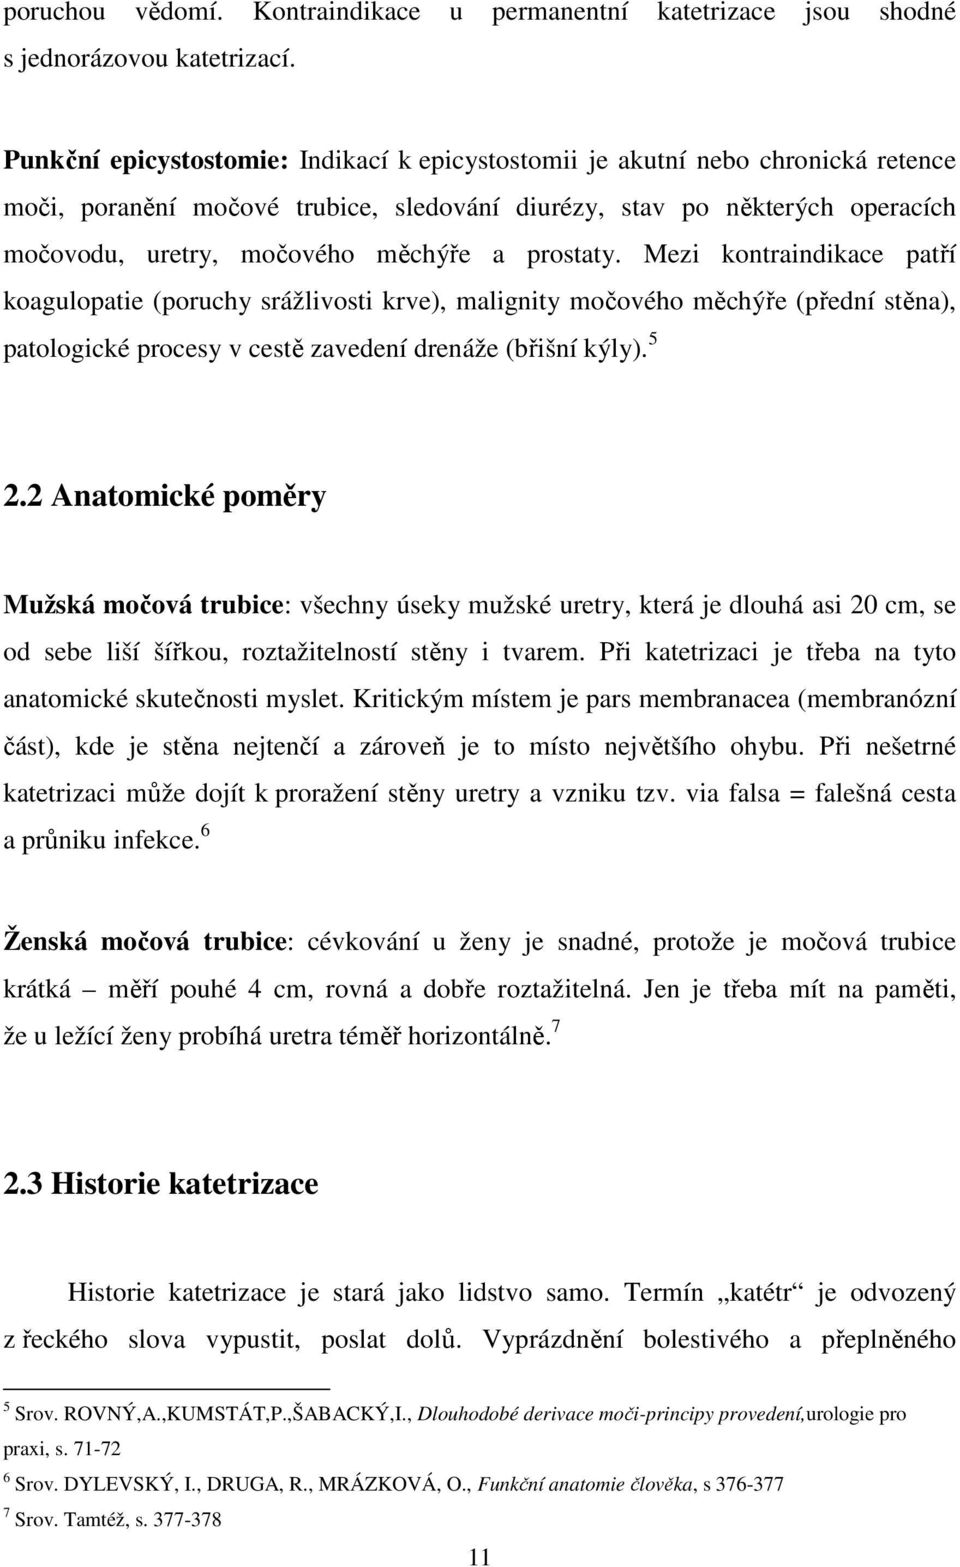 MASARYKOVA UNIVERZITA - PDF Stažení zdarma